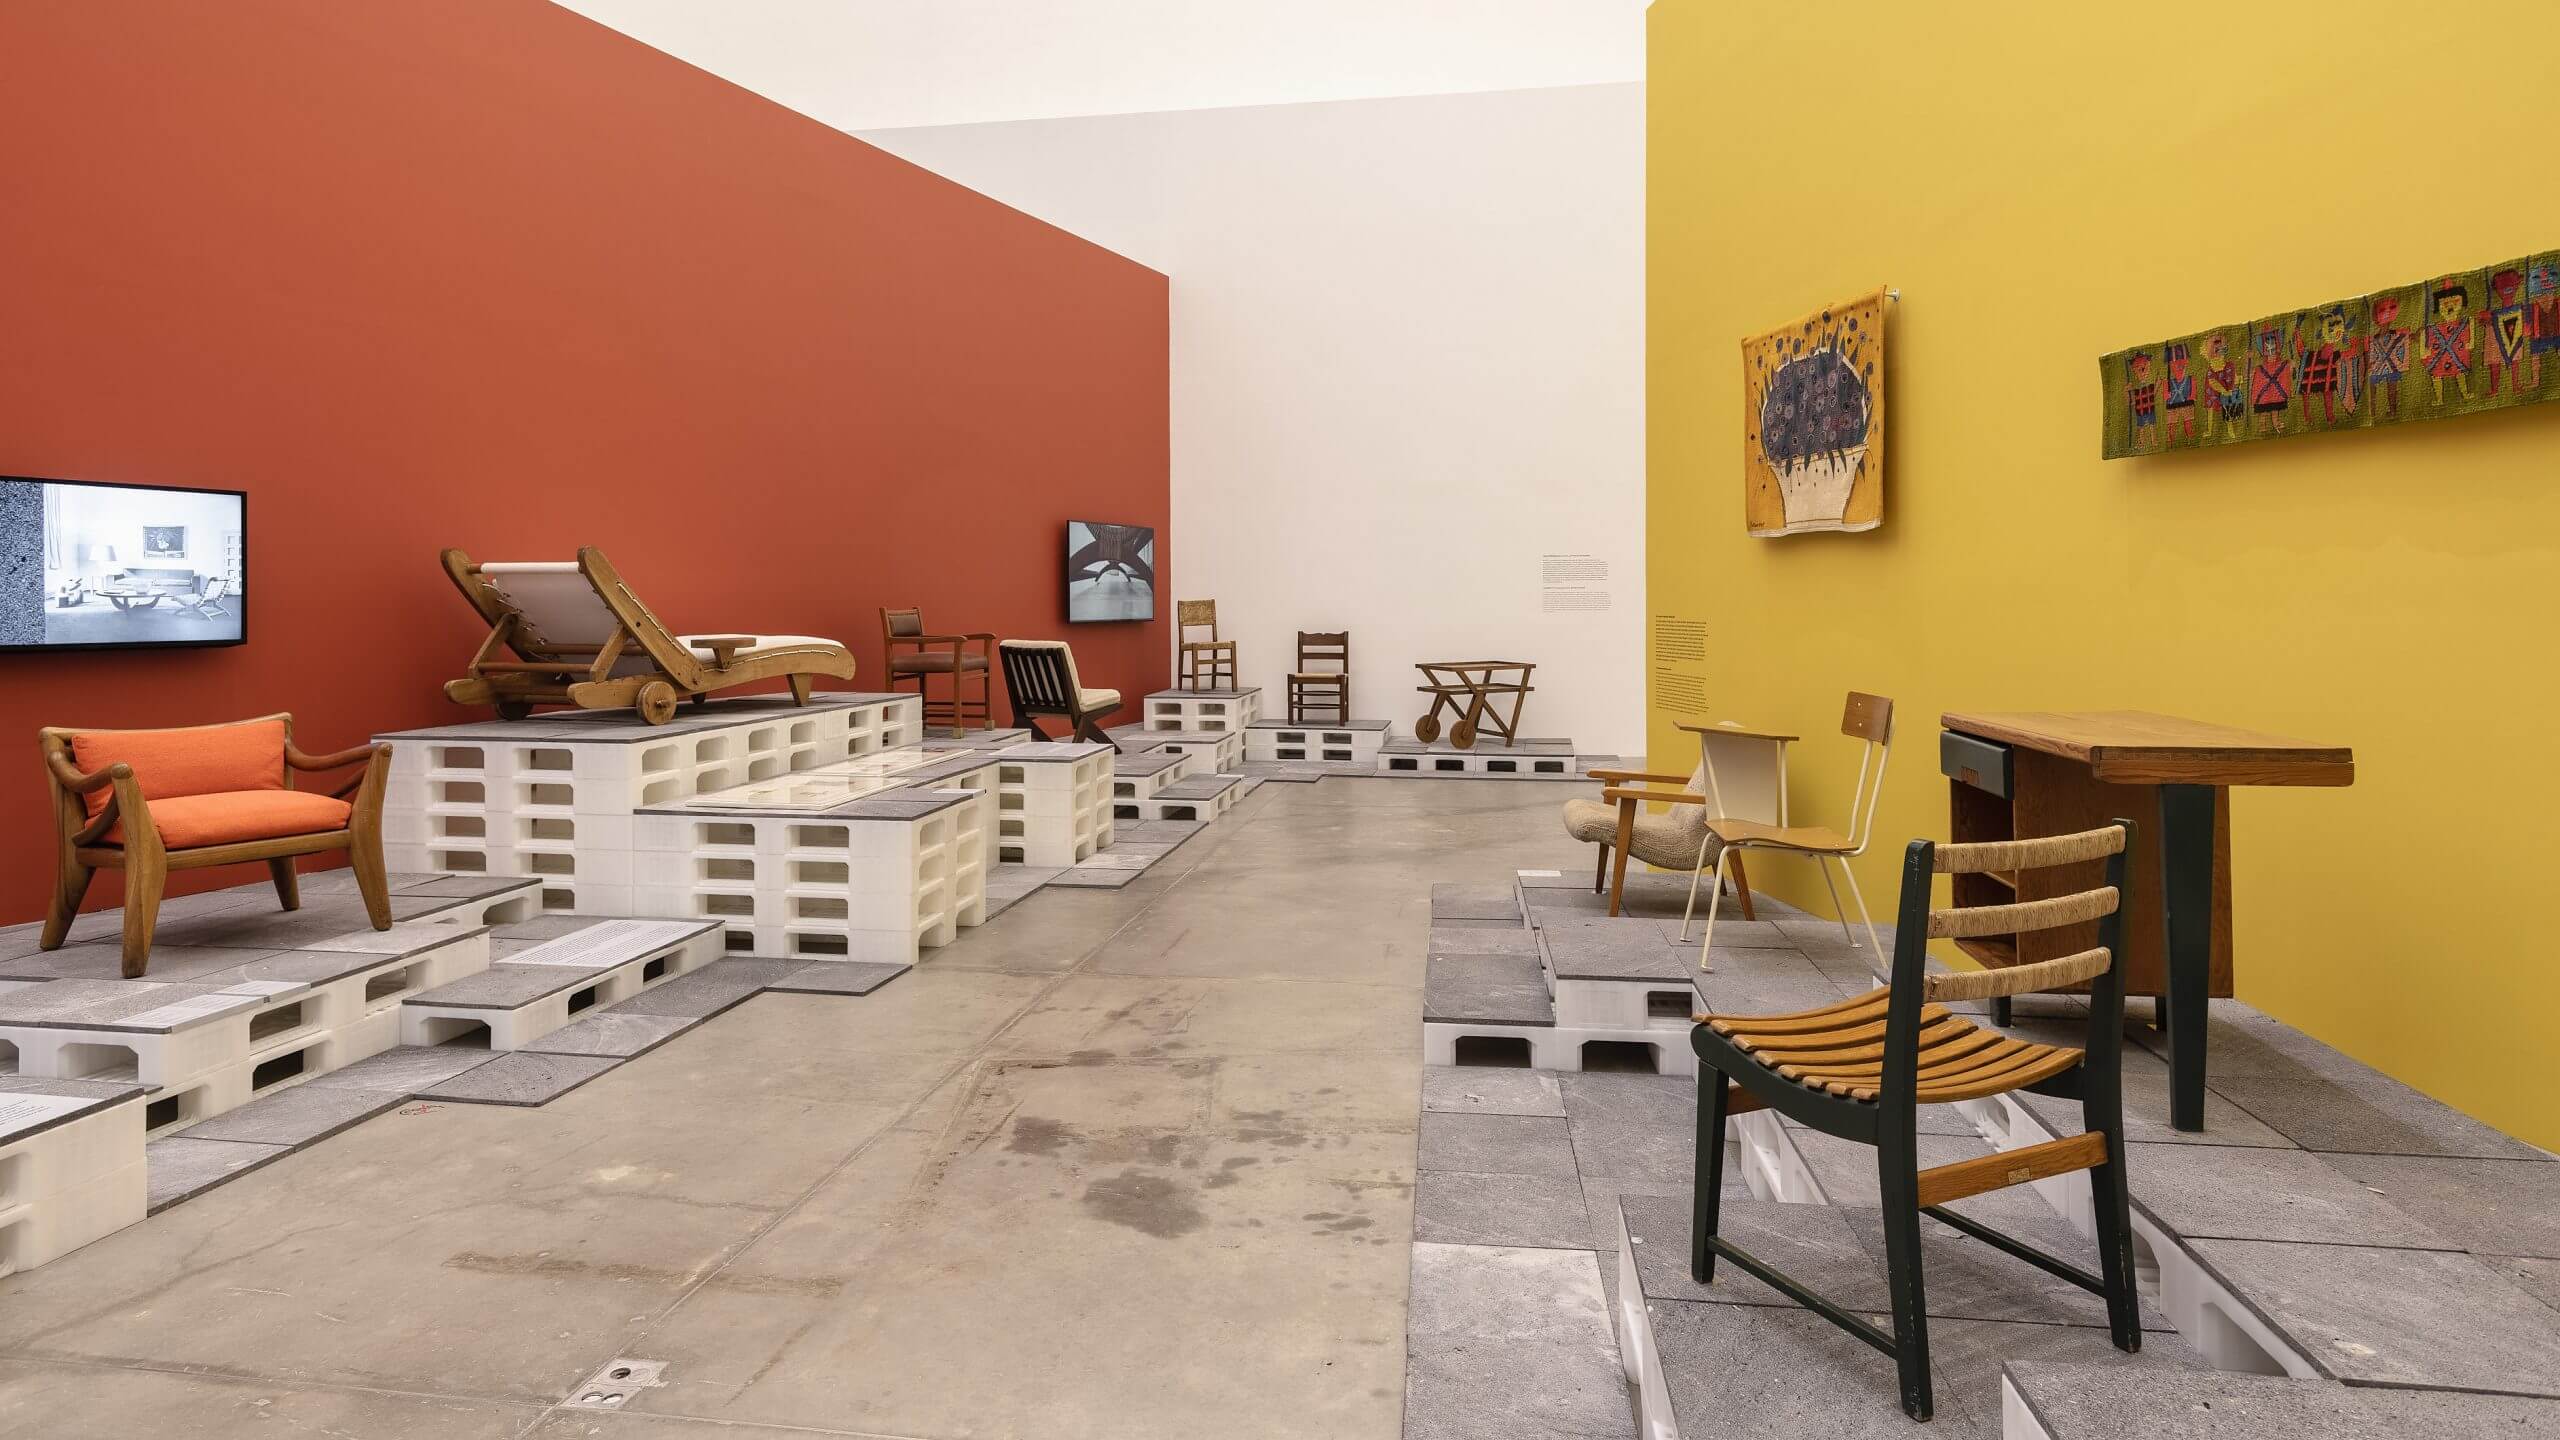 Fotografiadnos de la exposición Una modernidad hecha a mano que se exhibe en el Museo Universitario de Arte Contemporáneo (MUAC) de la CDMX hasta el 13 de noviembre de 2022